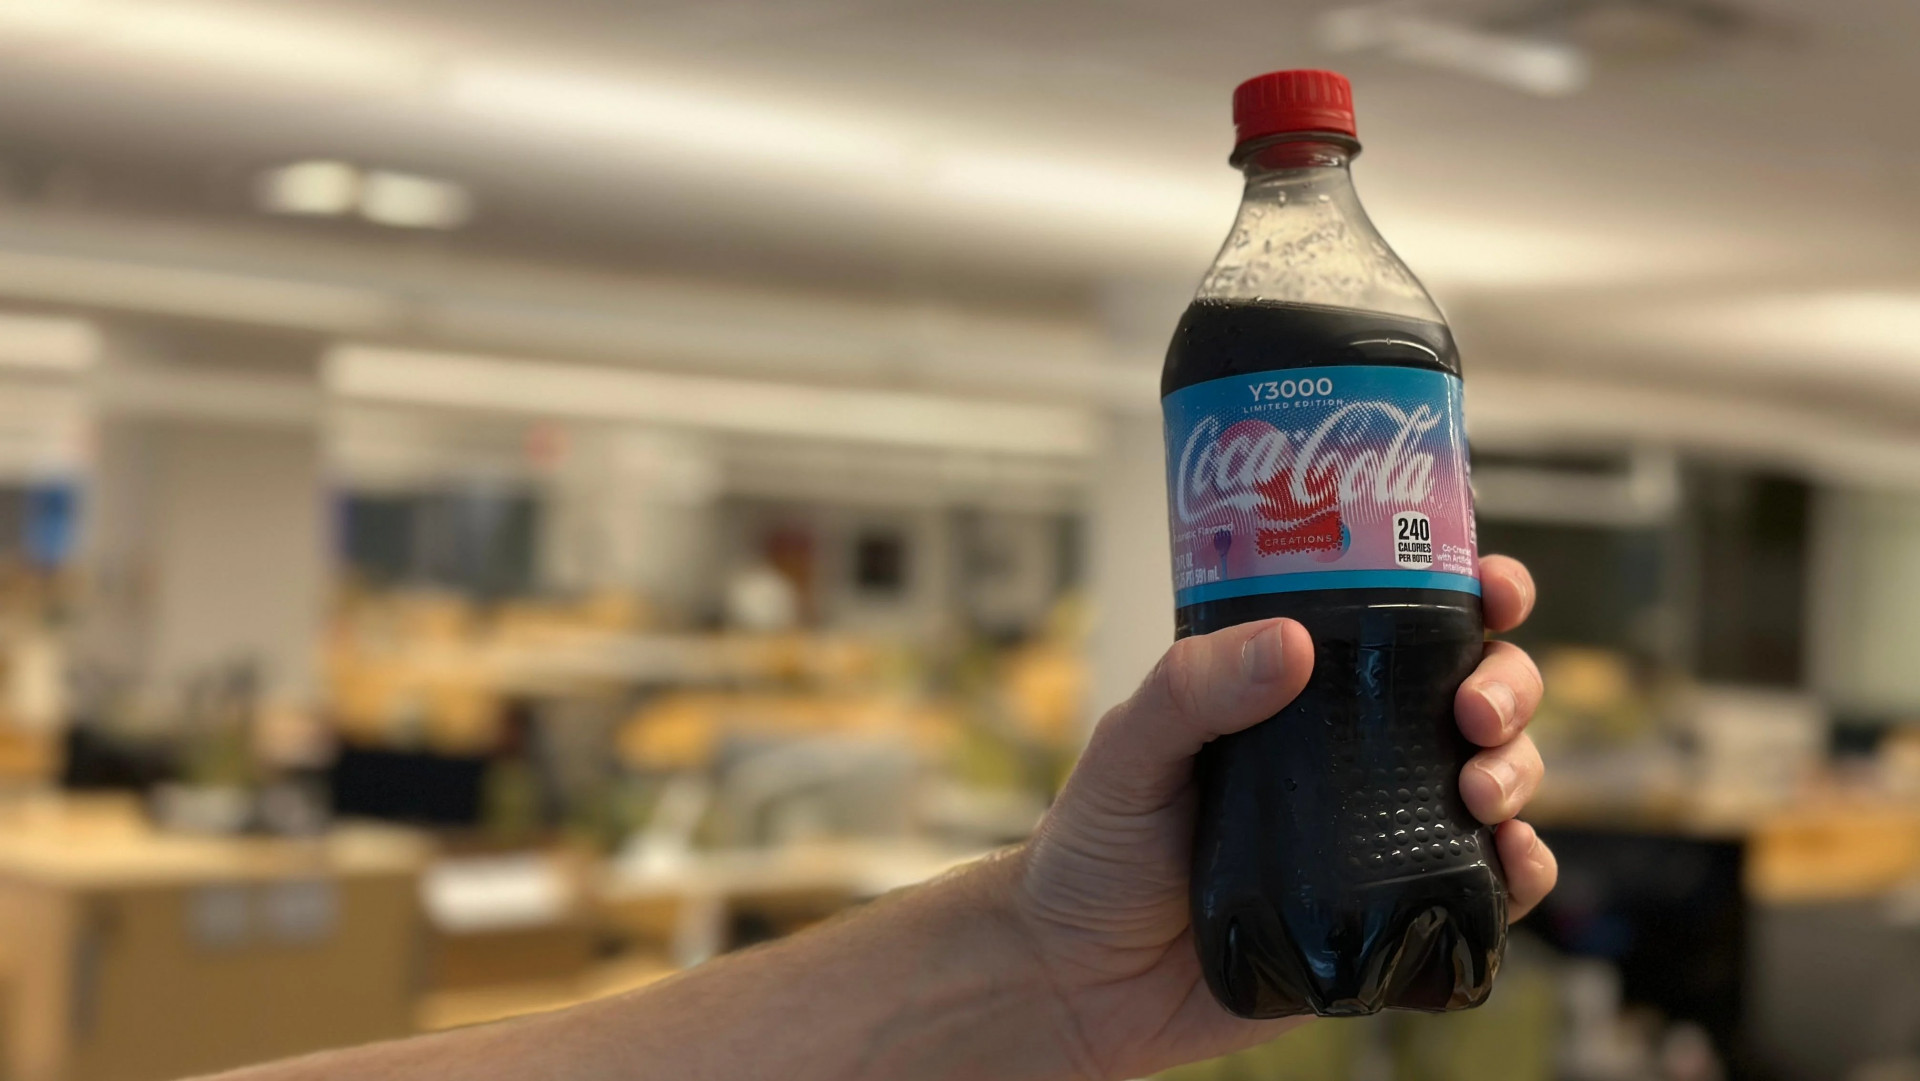 ИИ создал новый вкус Coca-Cola, но людям она не понравилась